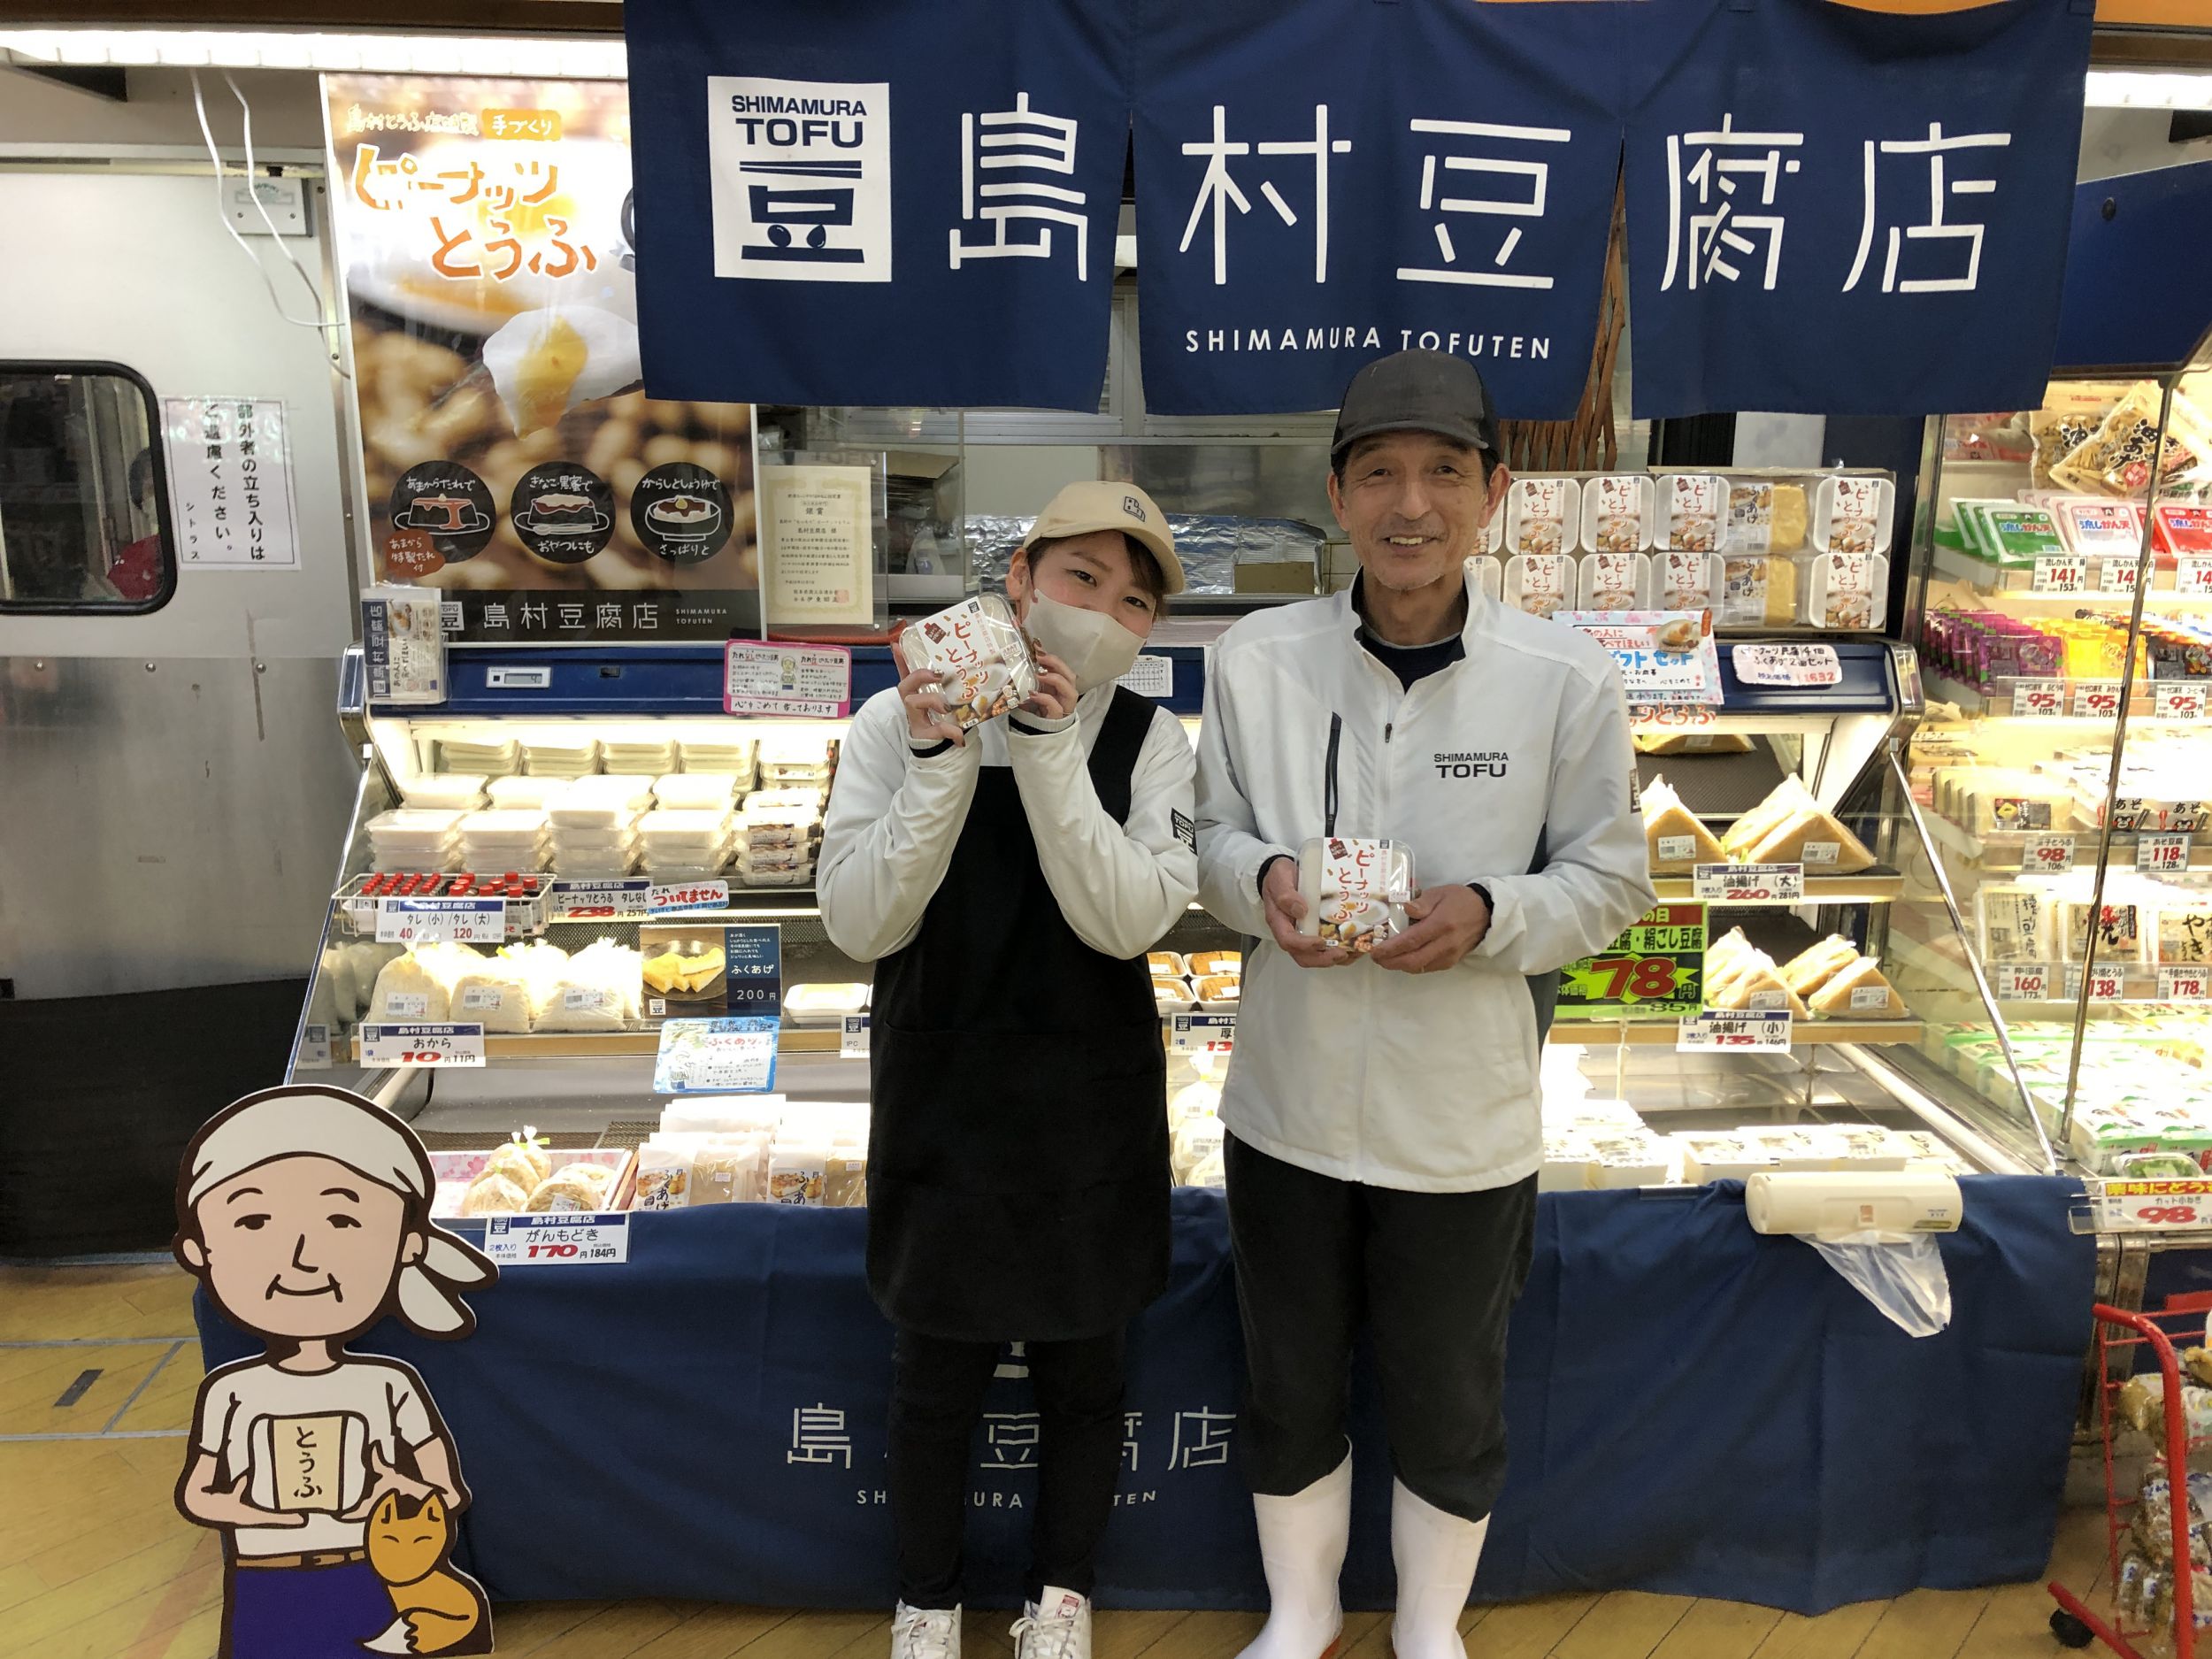 熊本県の島村豆腐店様にピーナッツとうふの充填用に株式会社ナオミの充填機を導入いただきました。